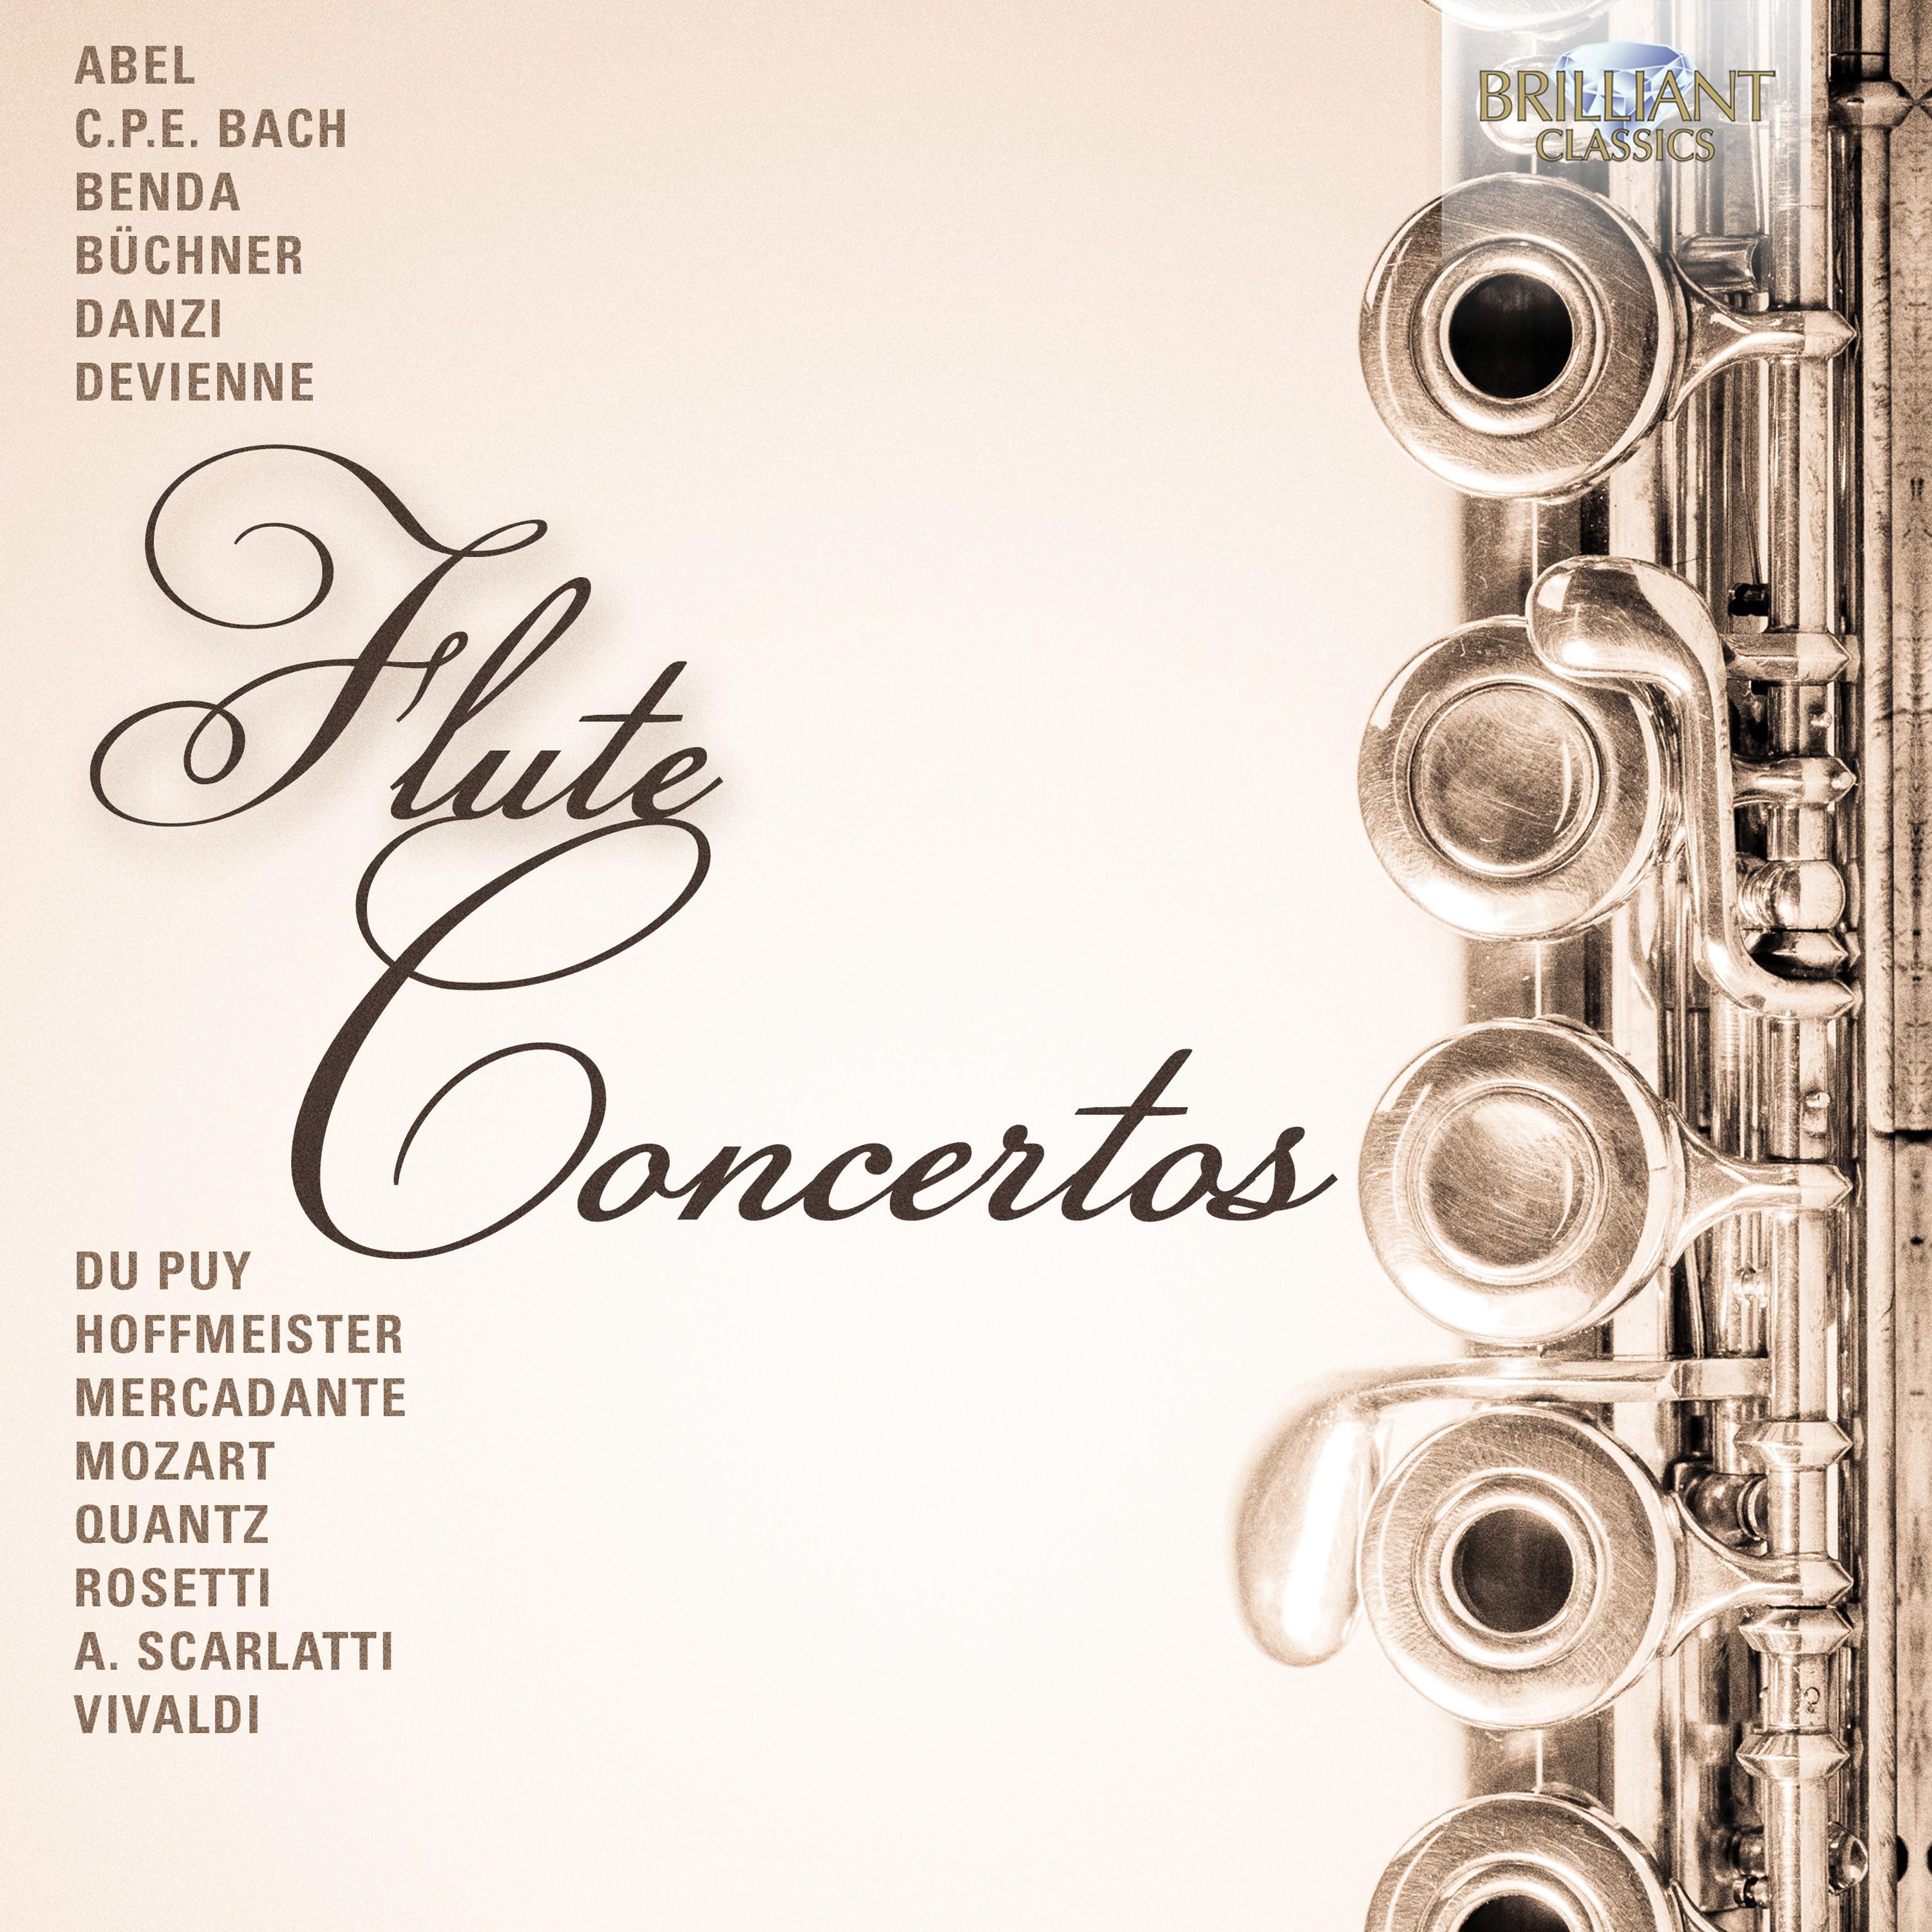 Flute Concerto in D Major, K. 314: II. Andante ma non troppo